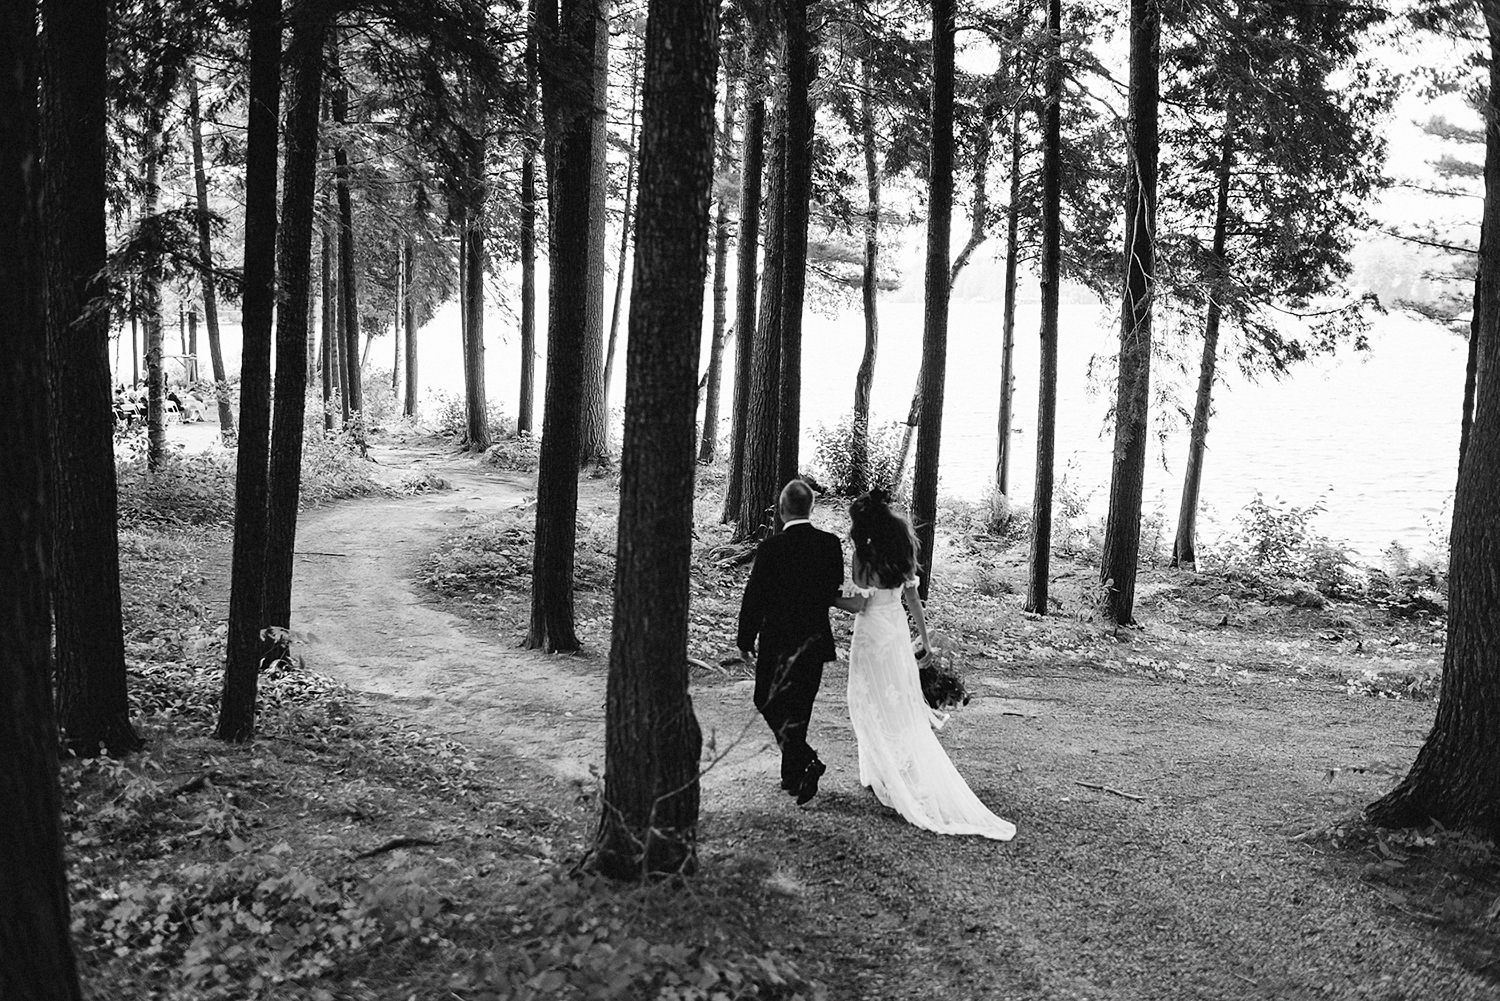 Muskoka-Cottage-Wedding-Photography-Photographer_Photojournalistic-Documentary-Wedding-Photography_Vintage-Bride-Sherwood-Inn-Lake-Wedding-Venue_Lakeside-Ceremony-Bride-and-Father.jpg